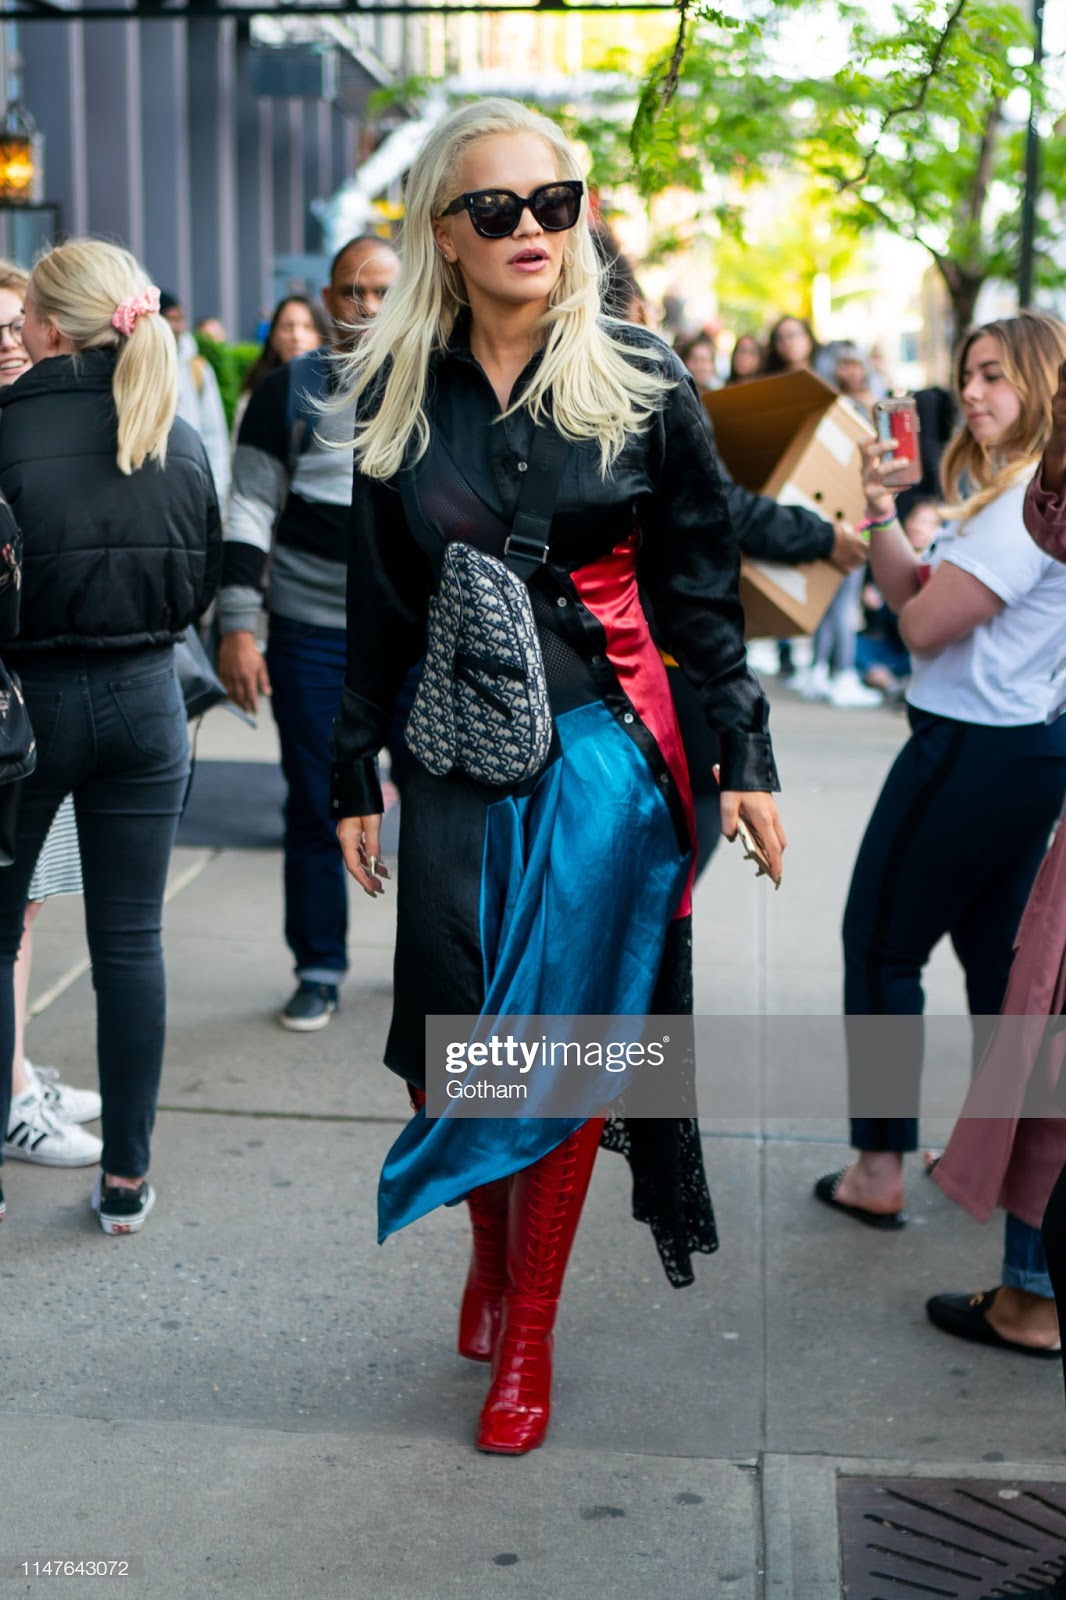 Ladies in Satin Blouses: Rita Ora - black satin blouse